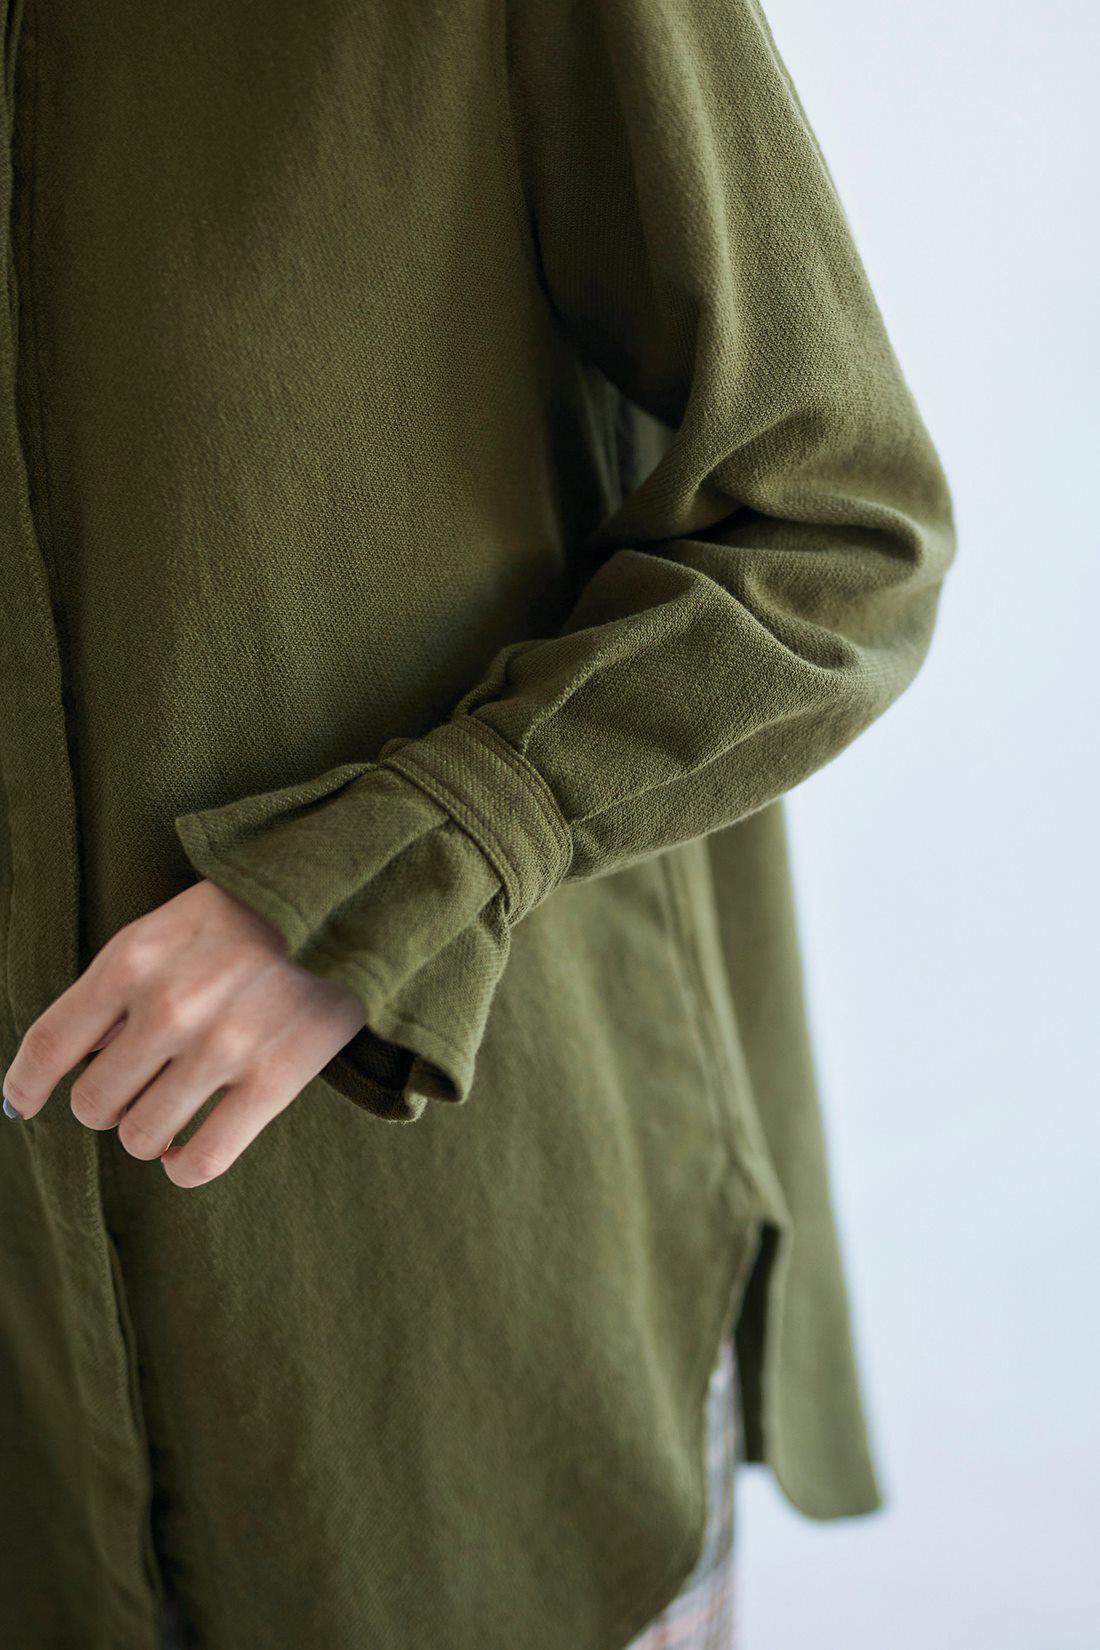 サニークラウズ|サニークラウズ　玉露シャツ〈レディース〉|セーターなどの袖口からフリルが出せる長めの袖。調整ボタン付きで重ね着もすっきりと決まります。